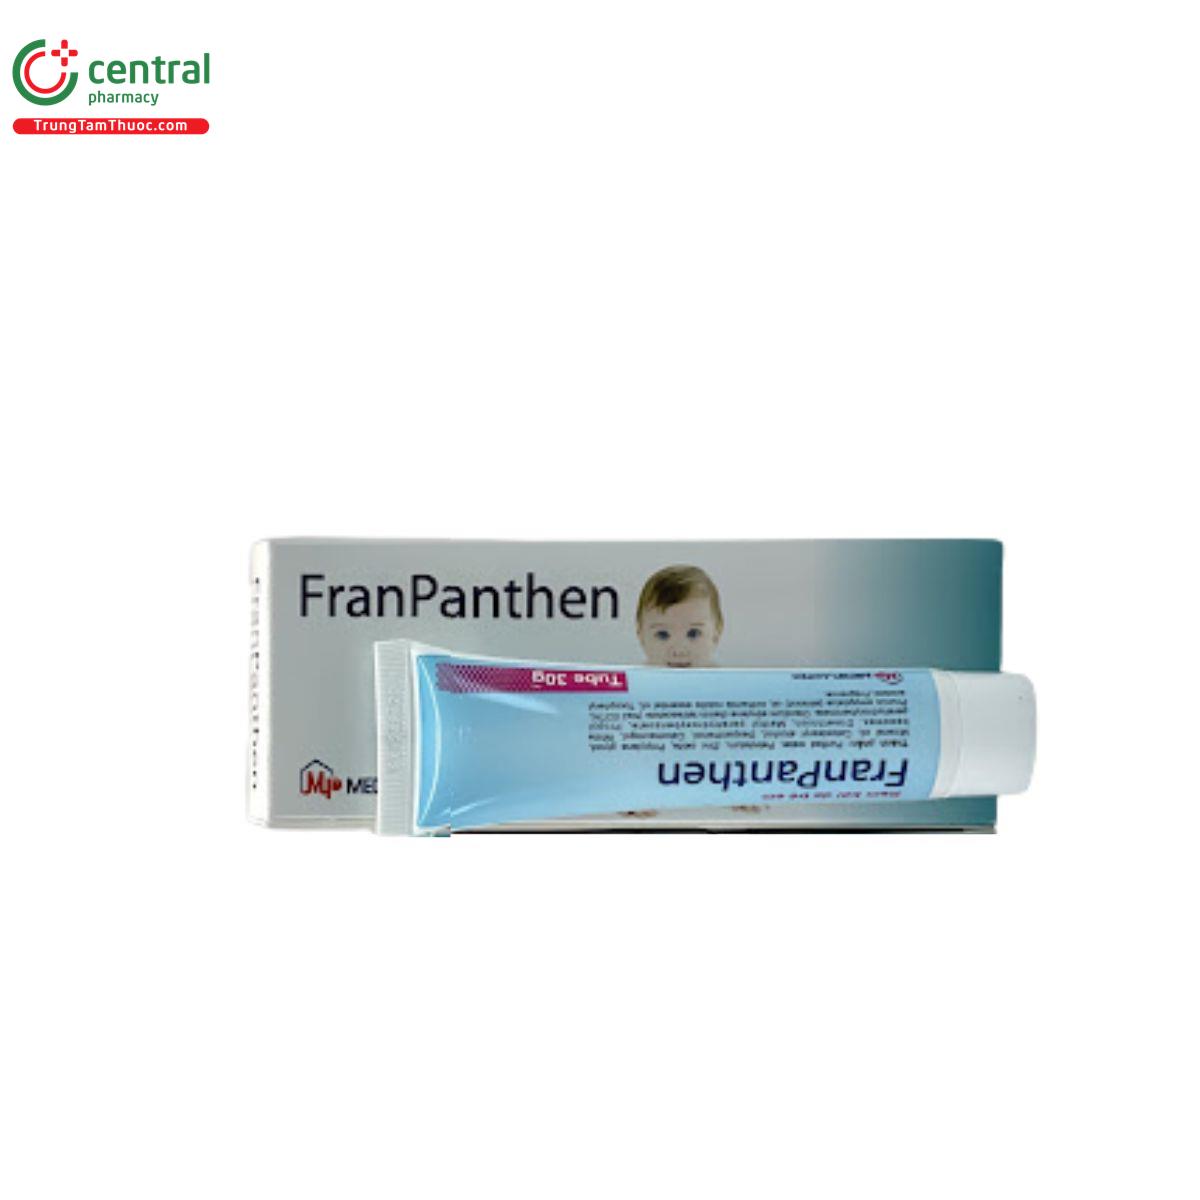 franpanthen 2 H2128